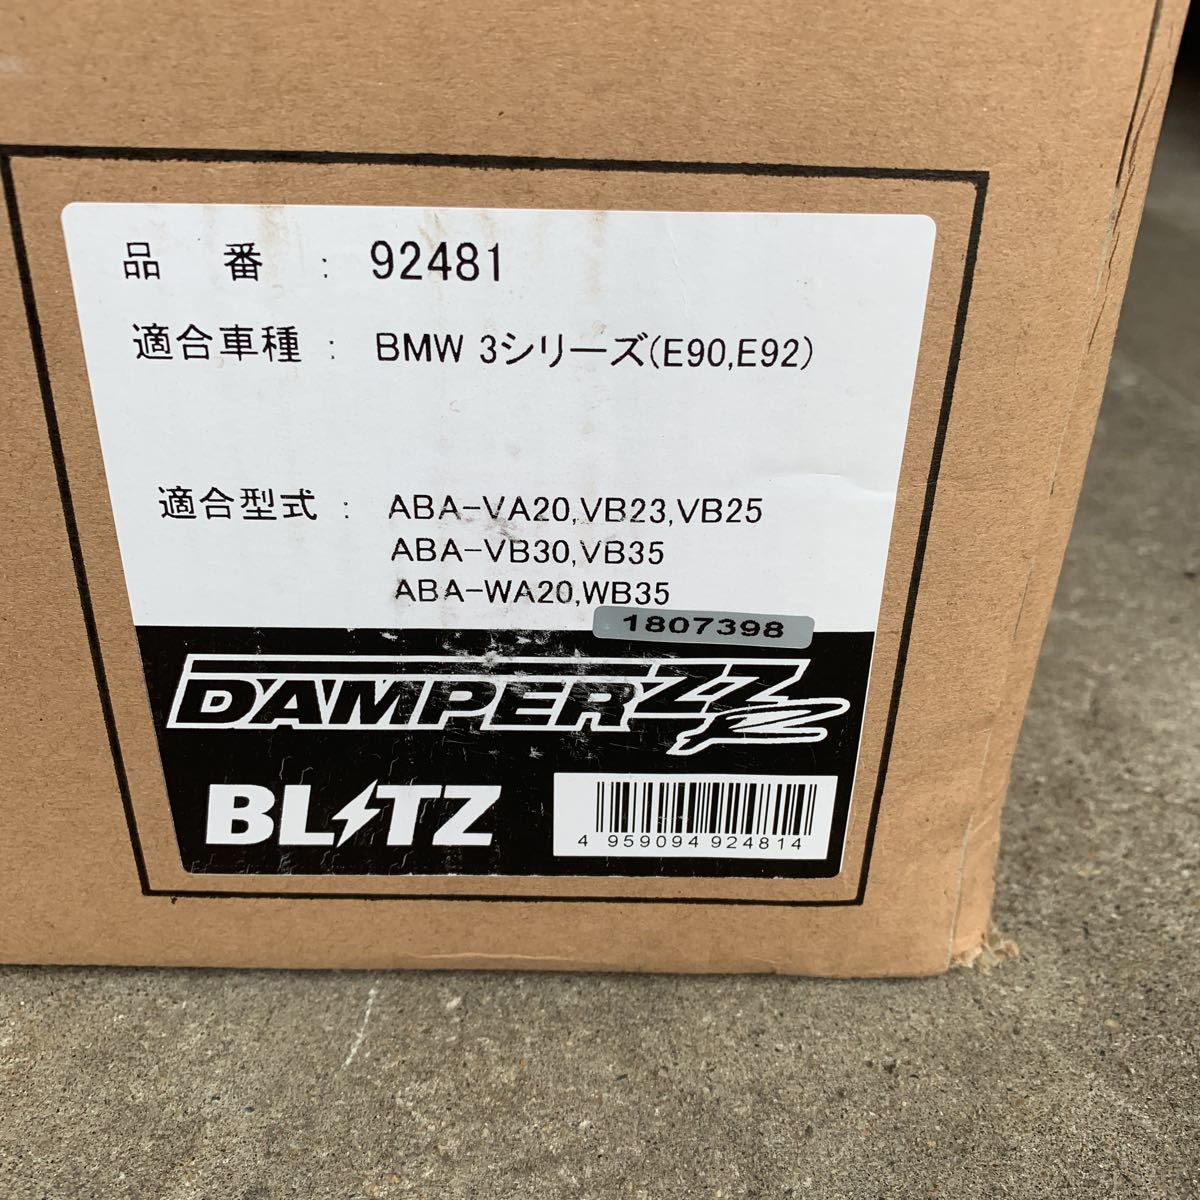 閃電戰汽車諧波BLITZ提示決定免費送貨 原文:ブリッツ車高調 BLITZ 即決送料無料